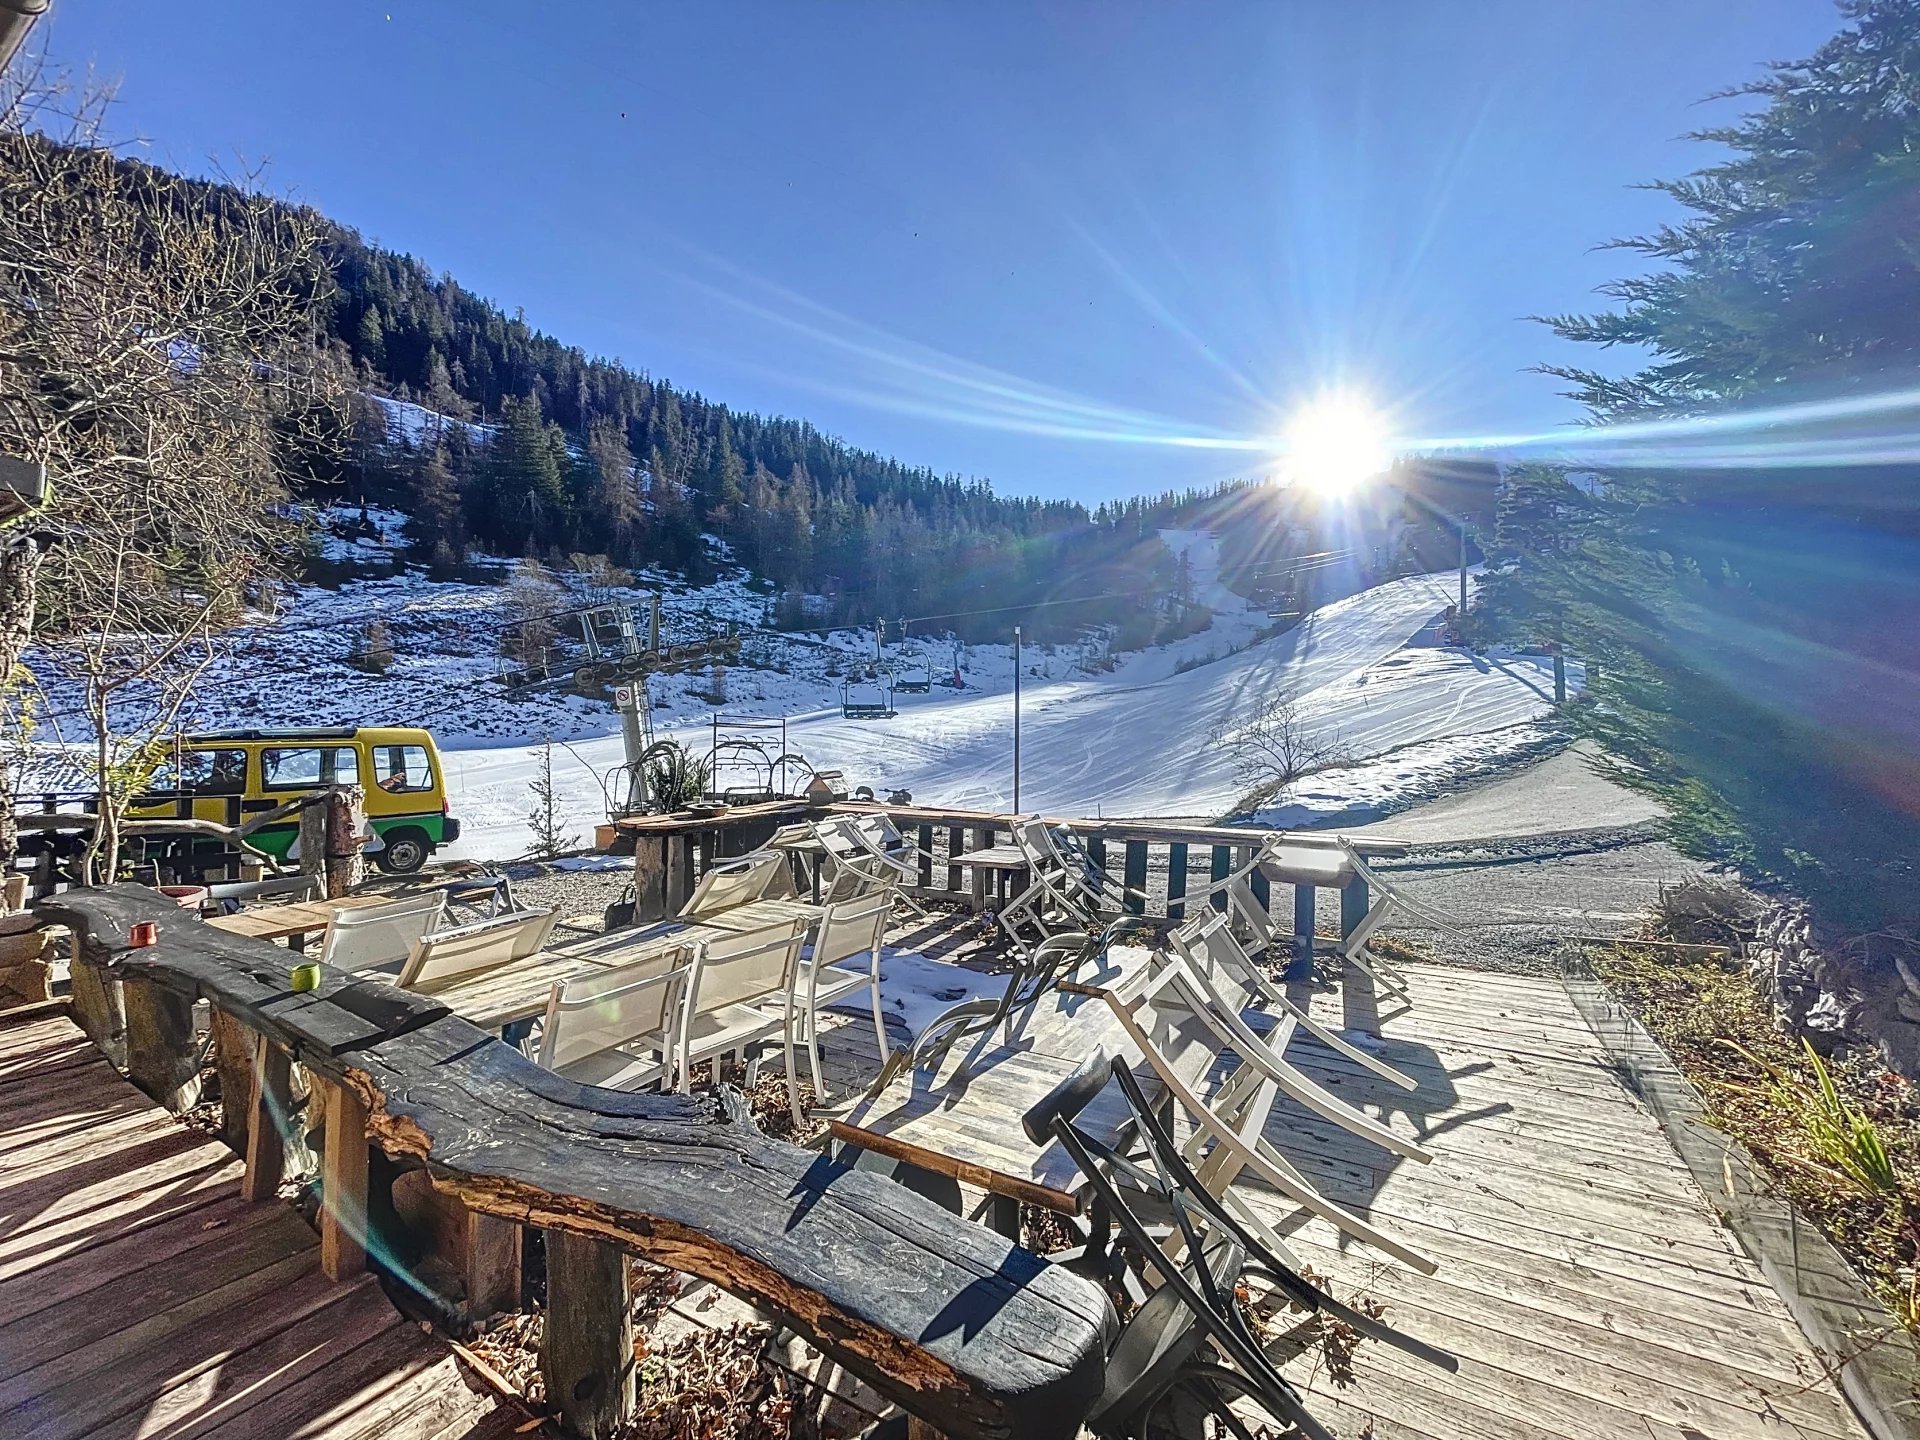 Fonds de commerce, Hôtel-Restaurant sur pistes de ski La Colmiane.